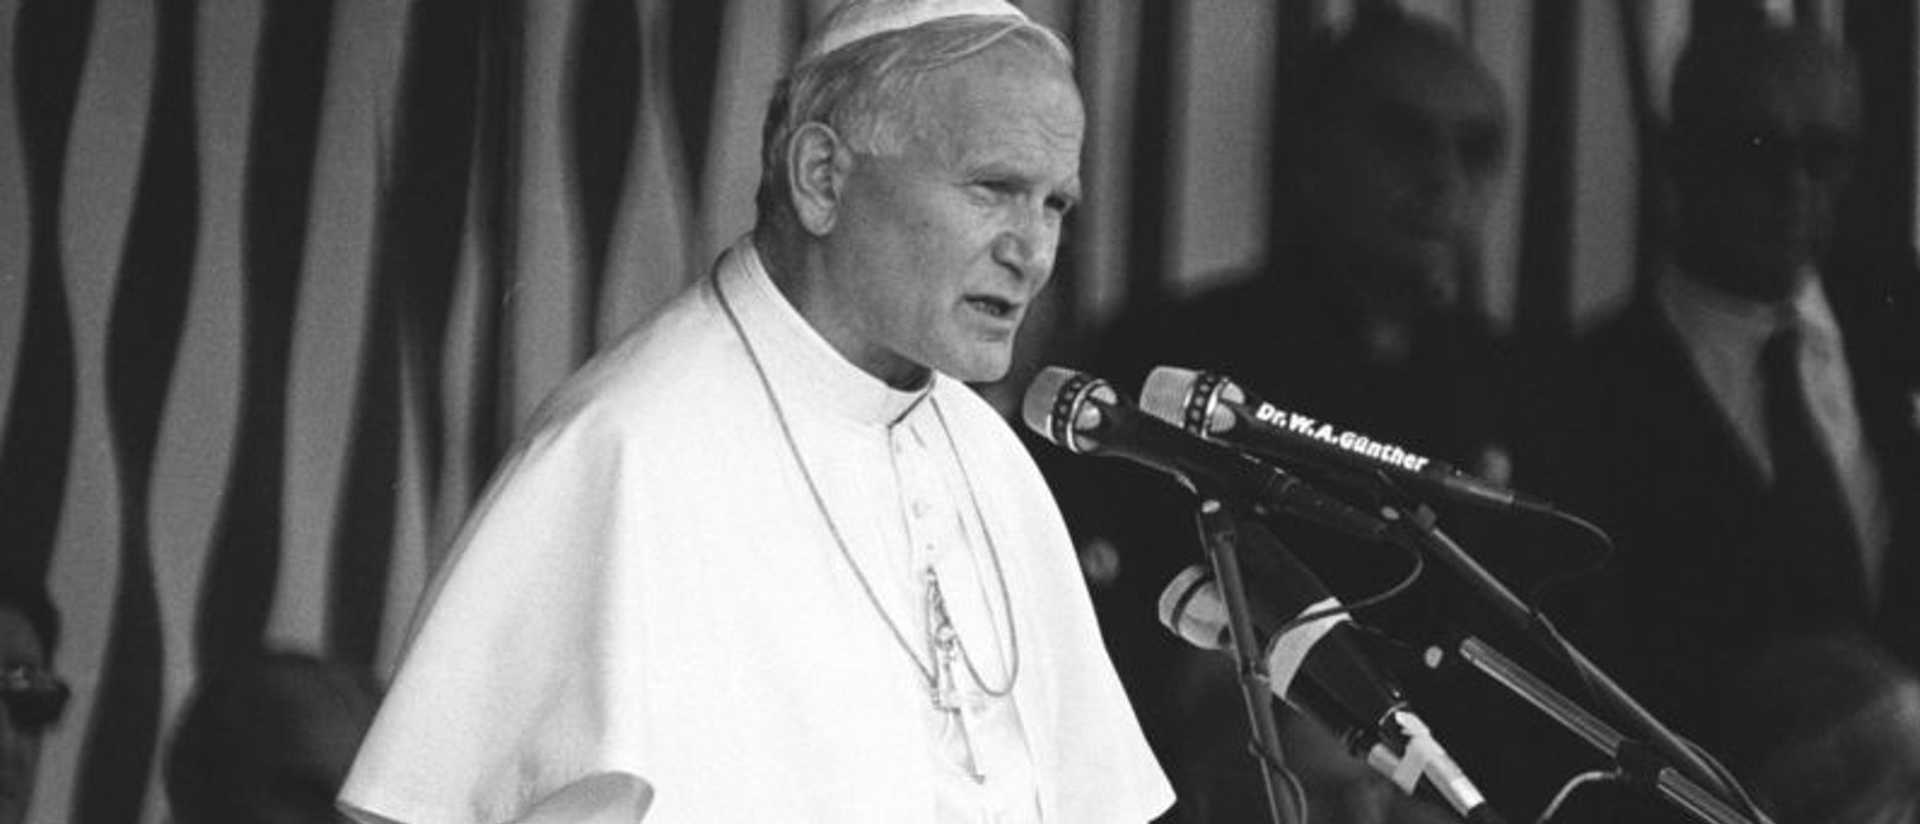 Johannes Paul II. sprach von der "gemeinsamen Wurzel" des Christentums und des Judentums. Das Bild zeigt das Kirchenoberhaupt 1984 in Genf.